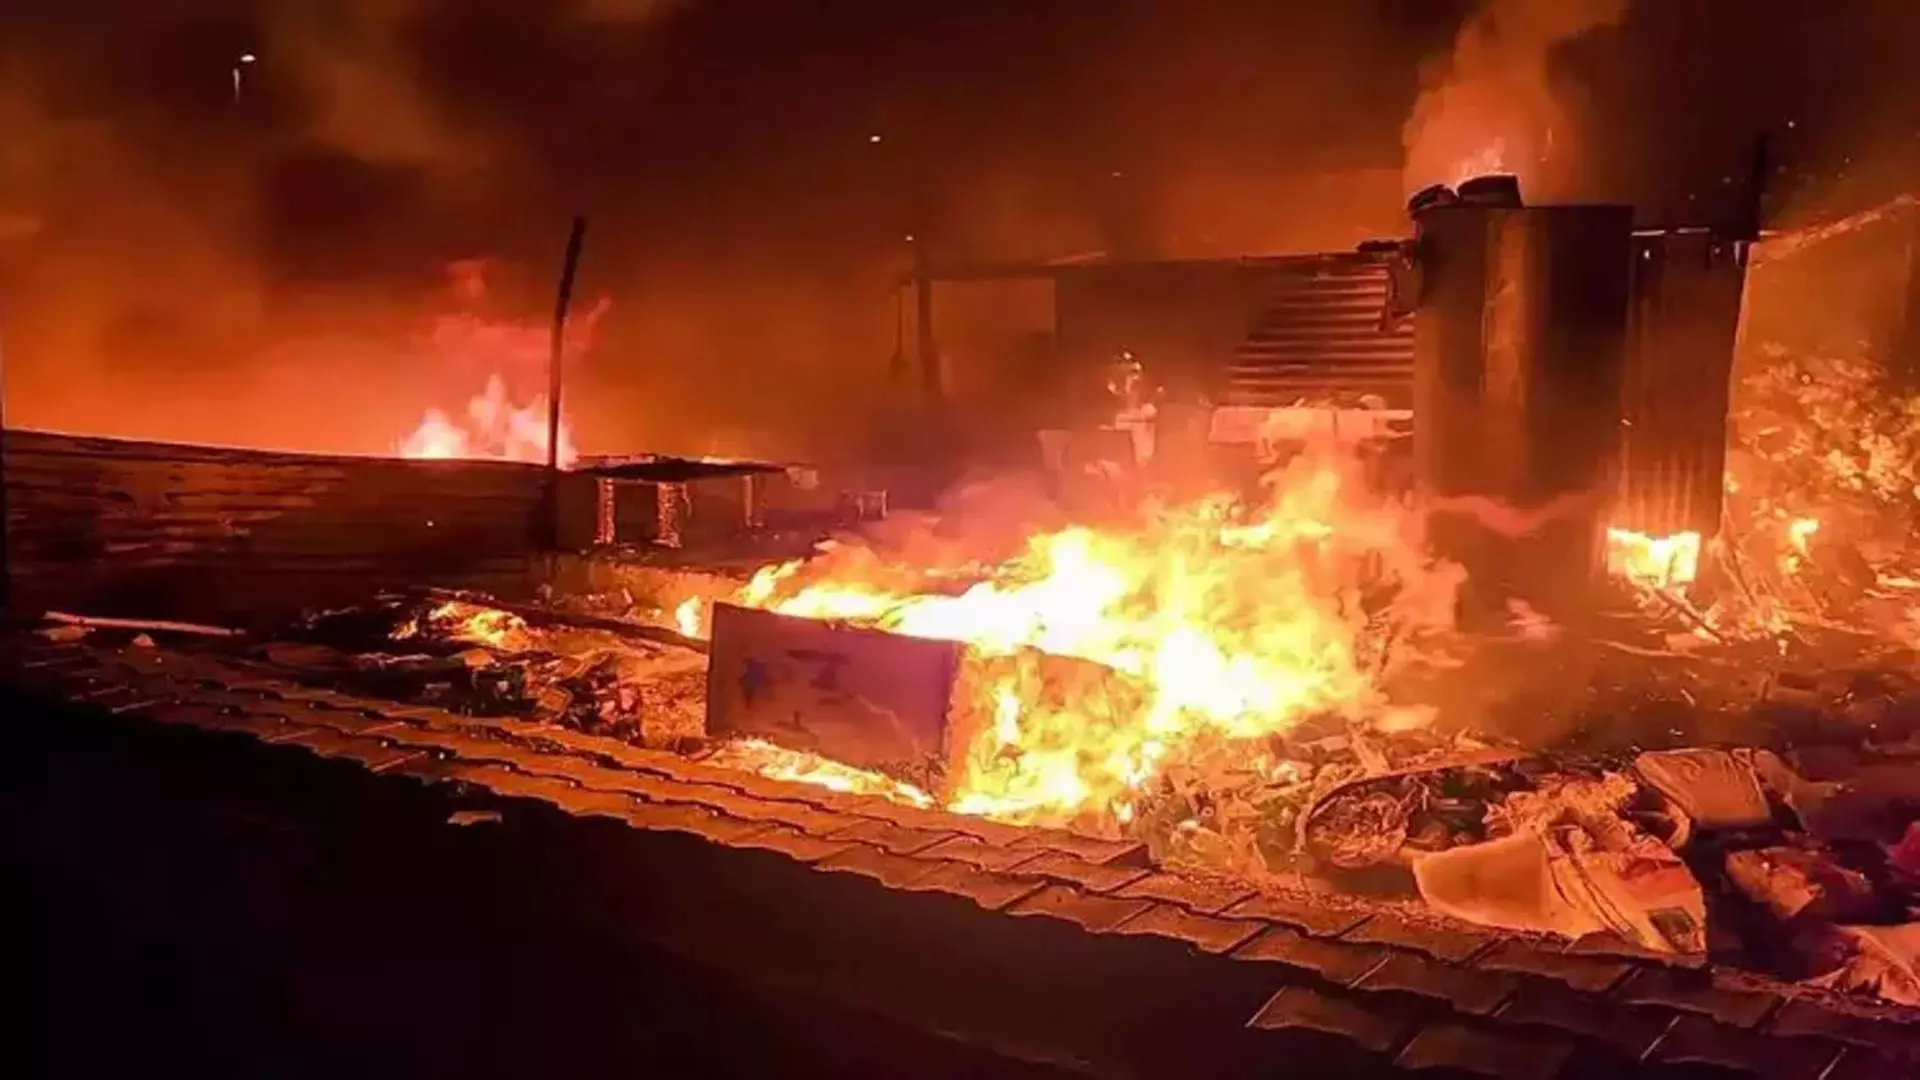 South Korean बचाव दल ने जली हुई फैक्ट्री की खोज की, जिसमें आग लगने से 22 लोगों की मौत हो गई